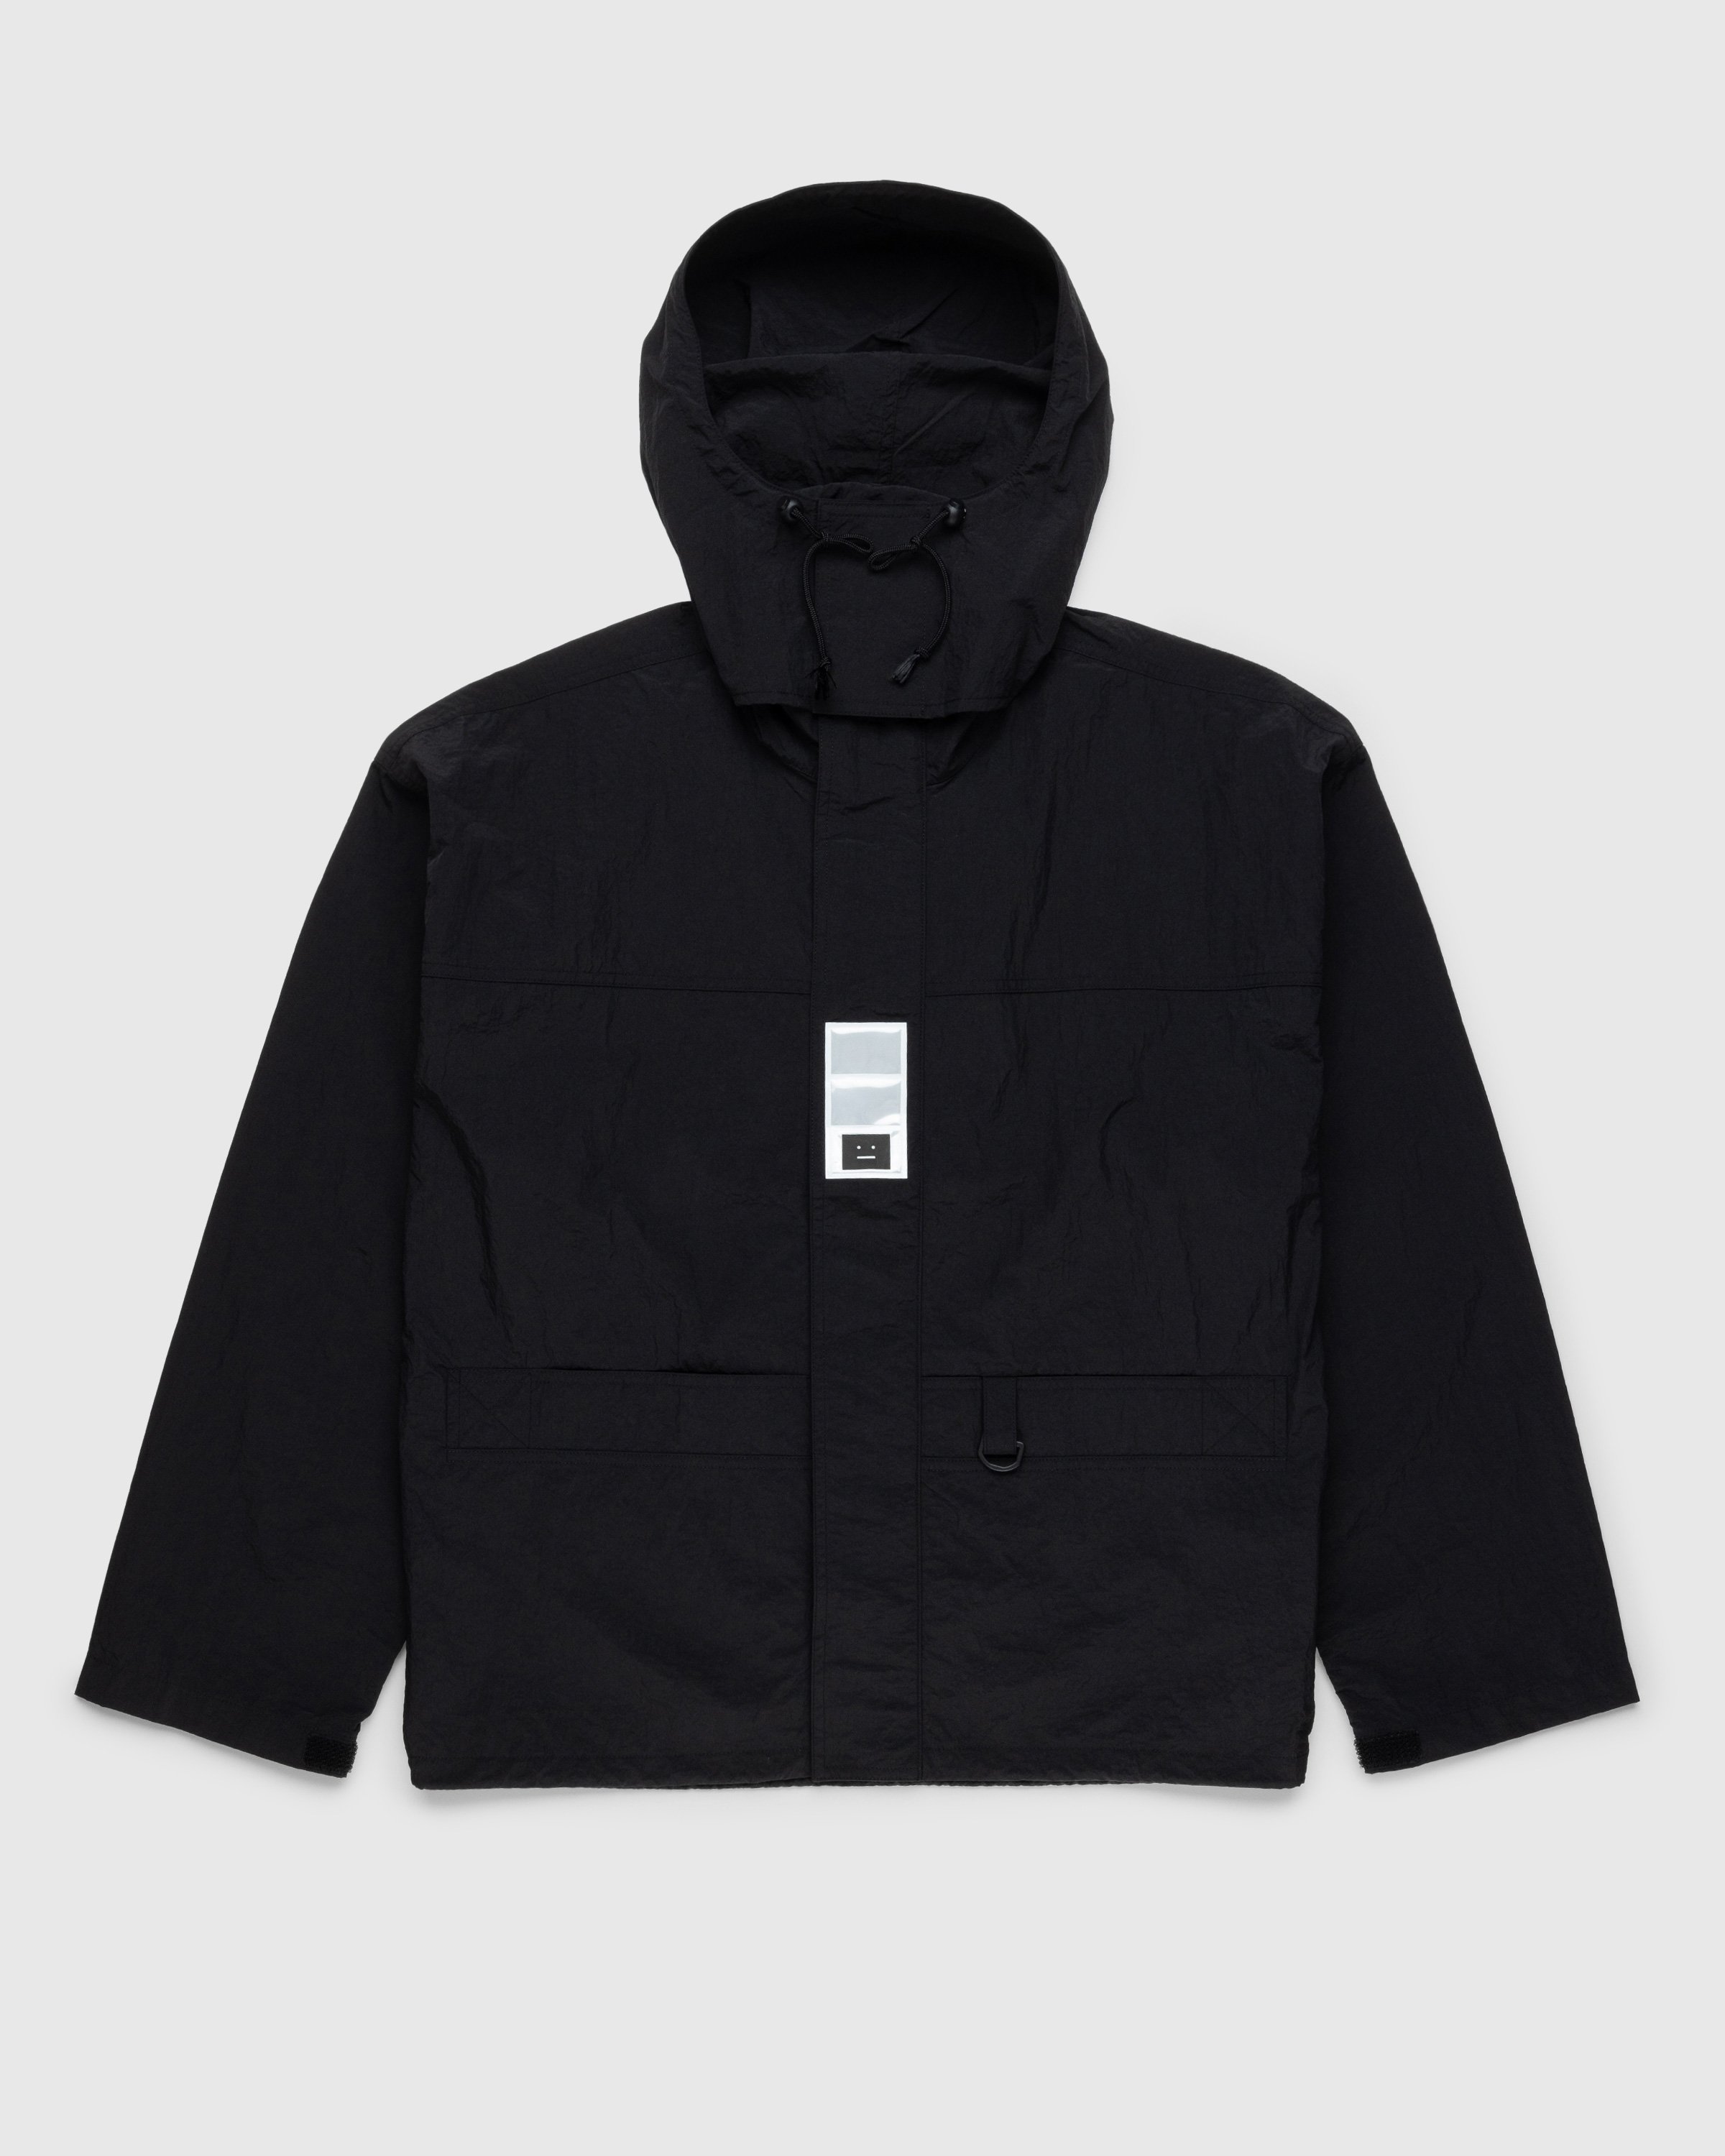 Acne Studios - Nylon Hooded Jacket Black - Clothing - Black - Image 1